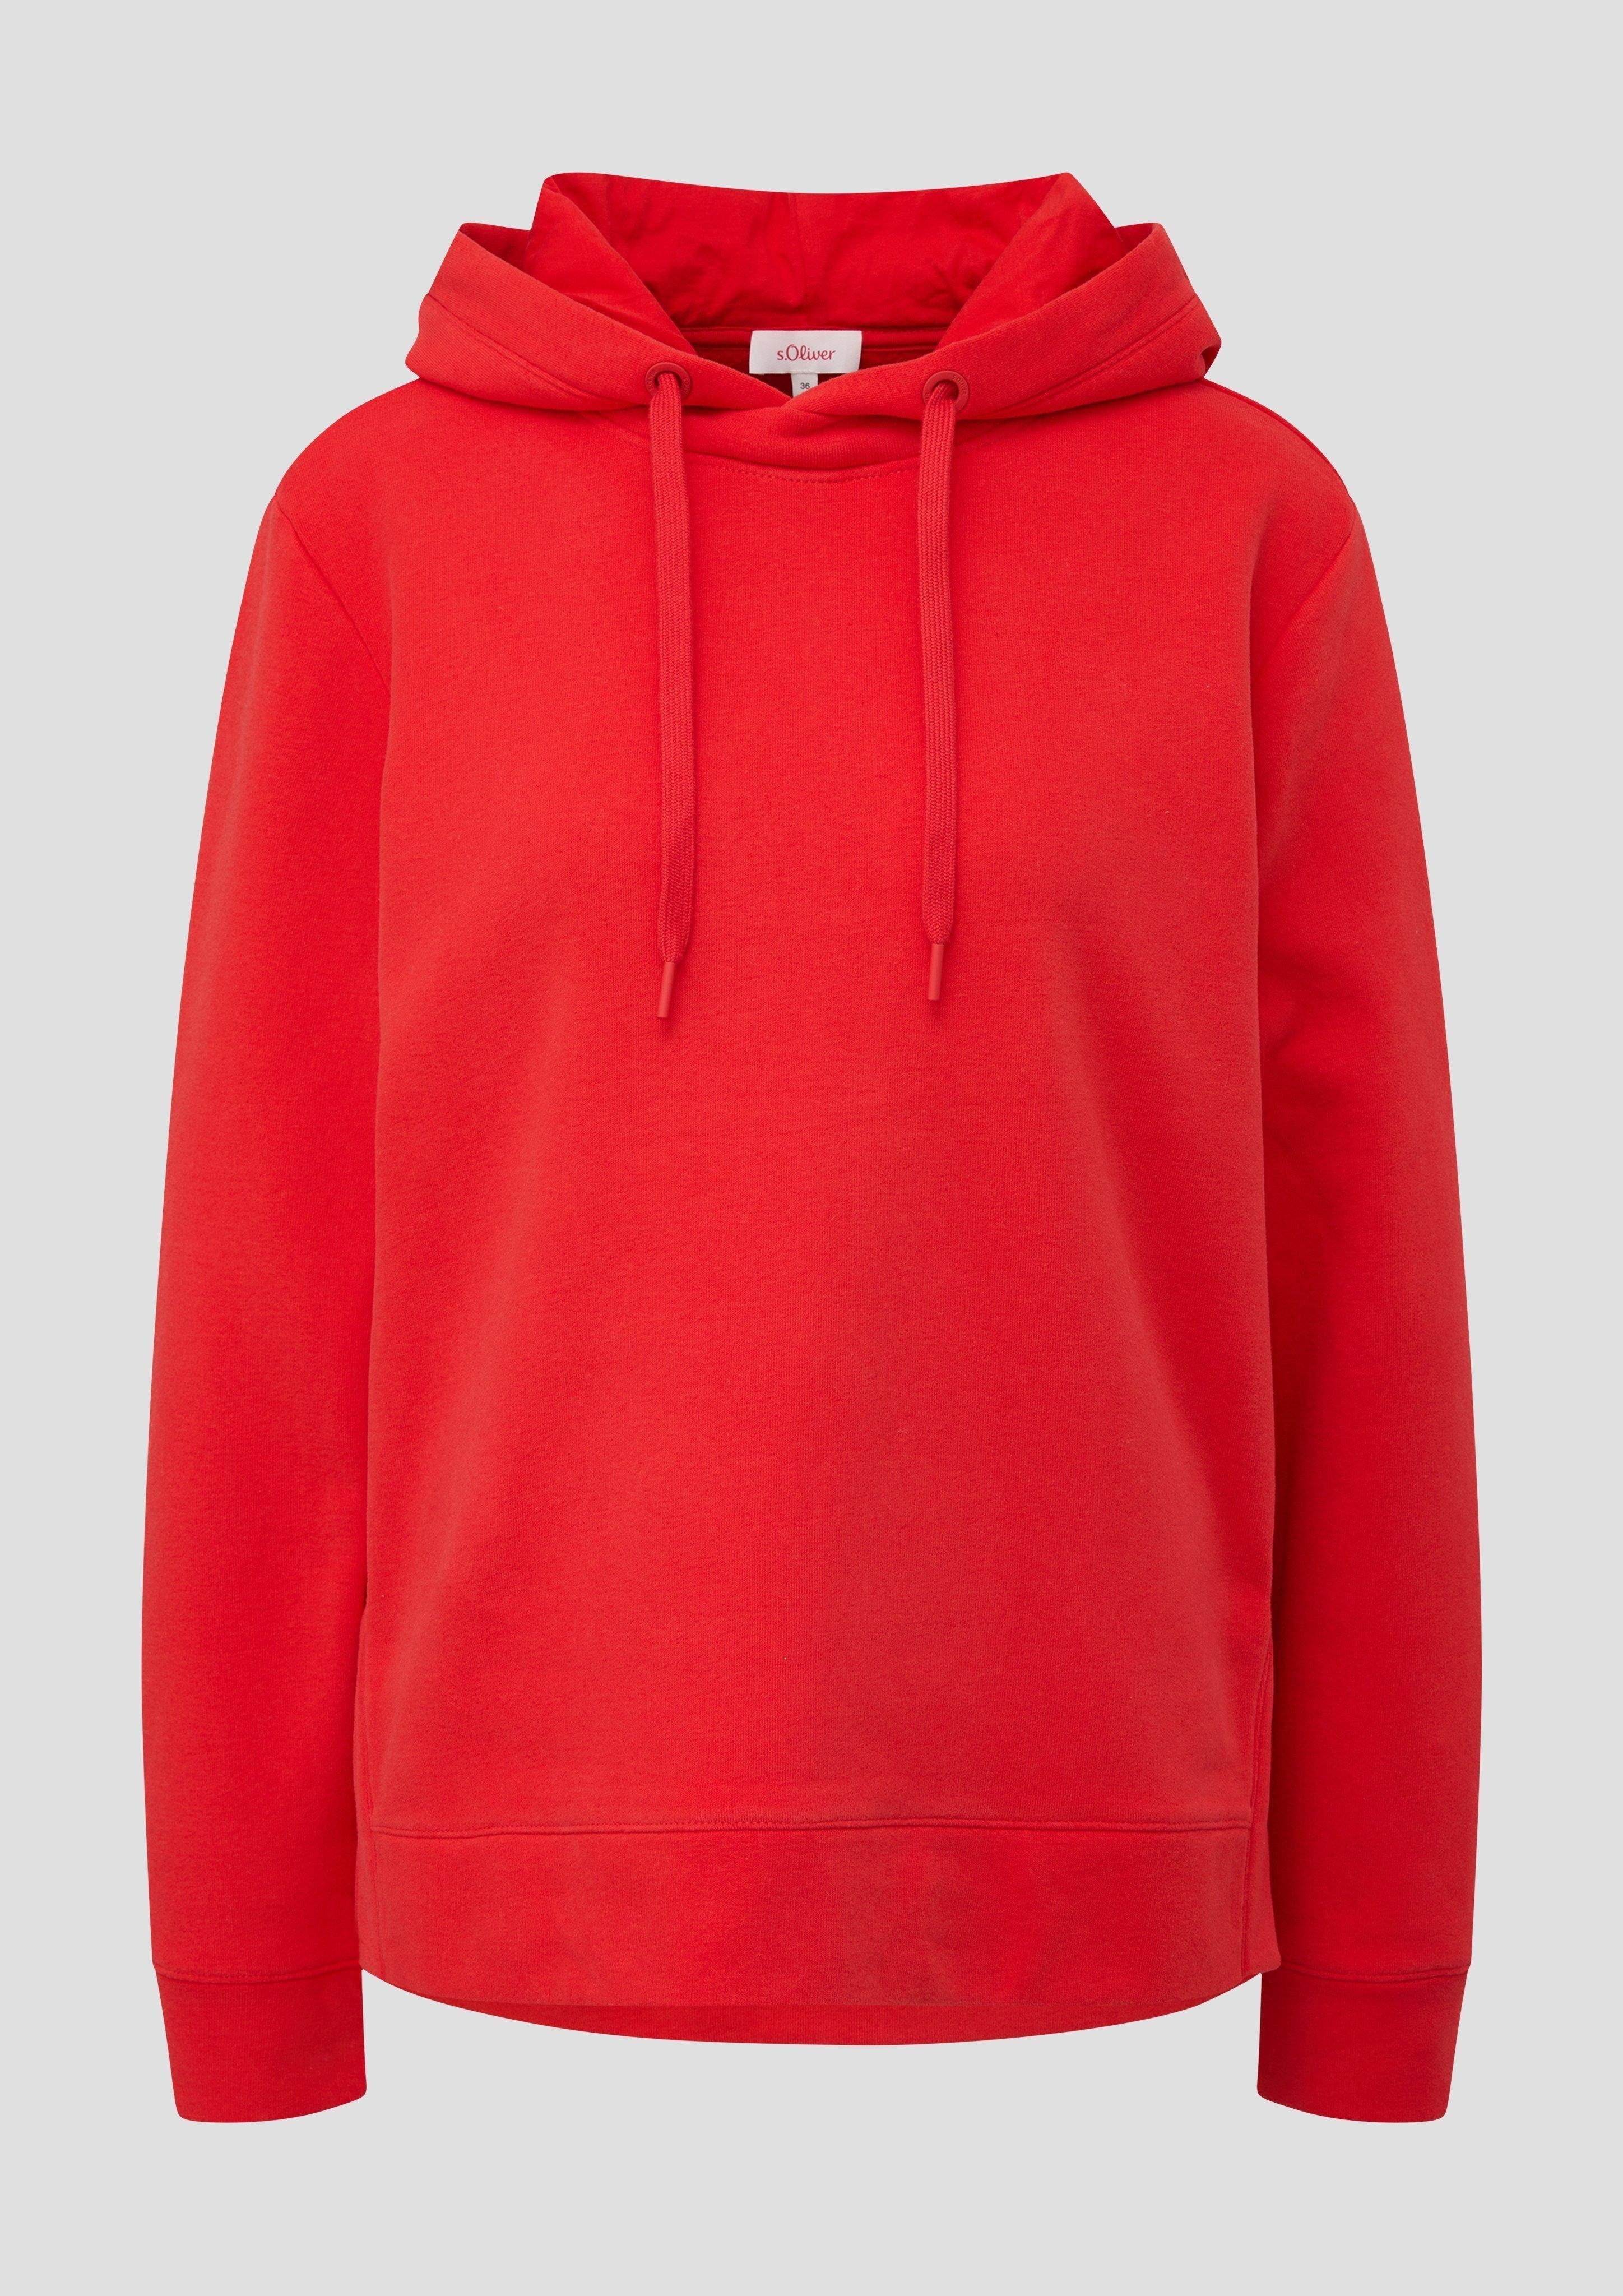 Sweatshirt Baumwollmix rot Kapuzen-Sweatshirt Durchzugkordel aus s.Oliver